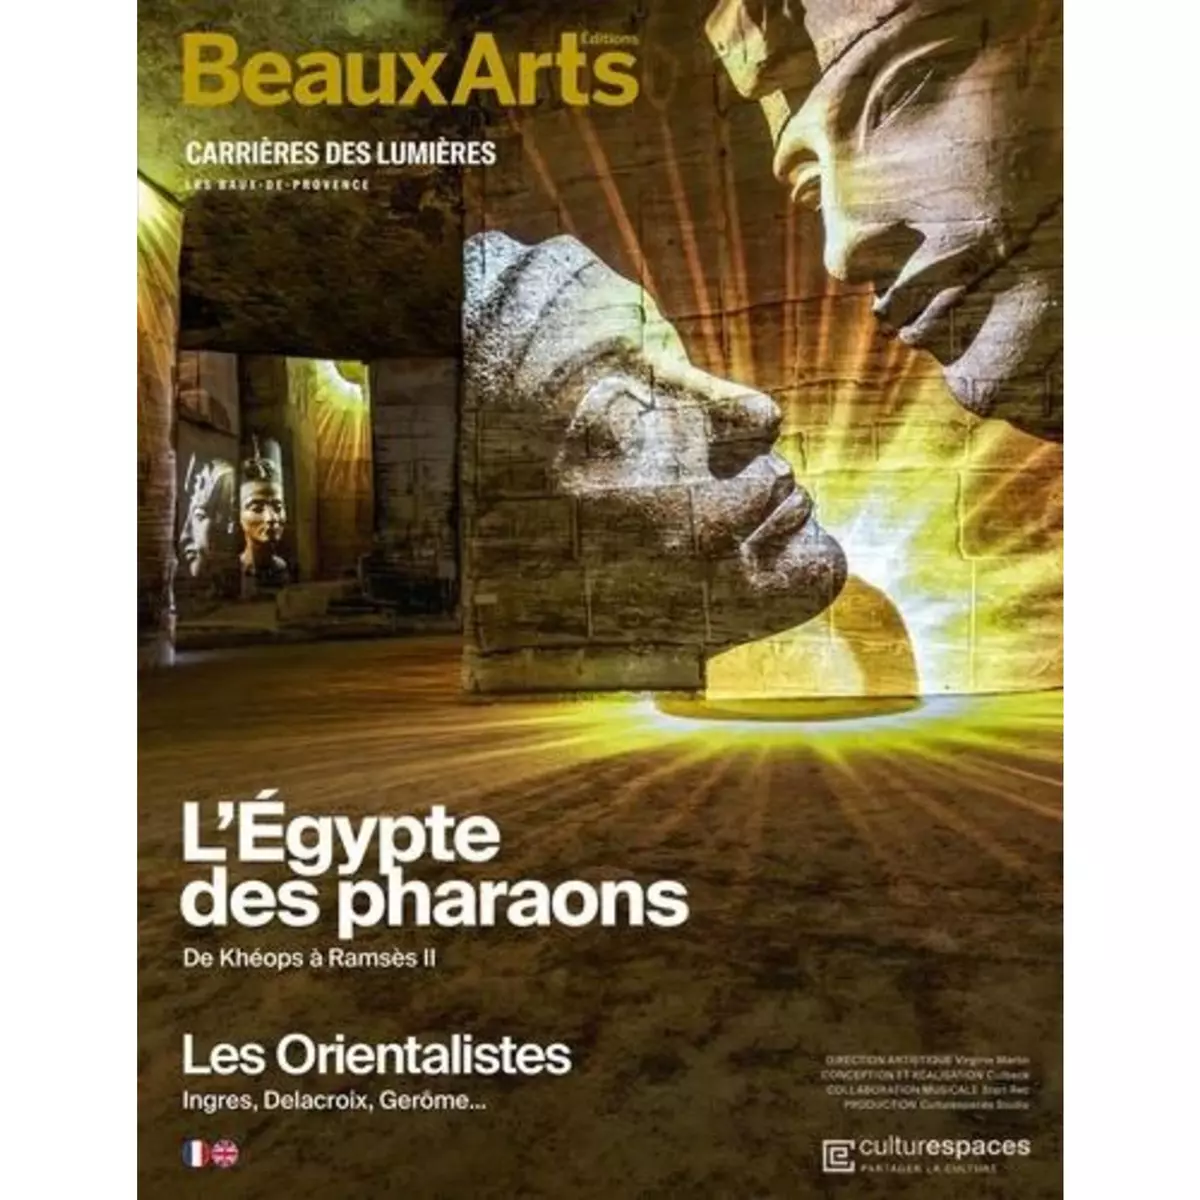  L'EGYPTE DES PHARAONS. DE KHEOPS A RAMSES II, EDITION BILINGUE FRANCAIS-ANGLAIS, Beaux Arts Editions